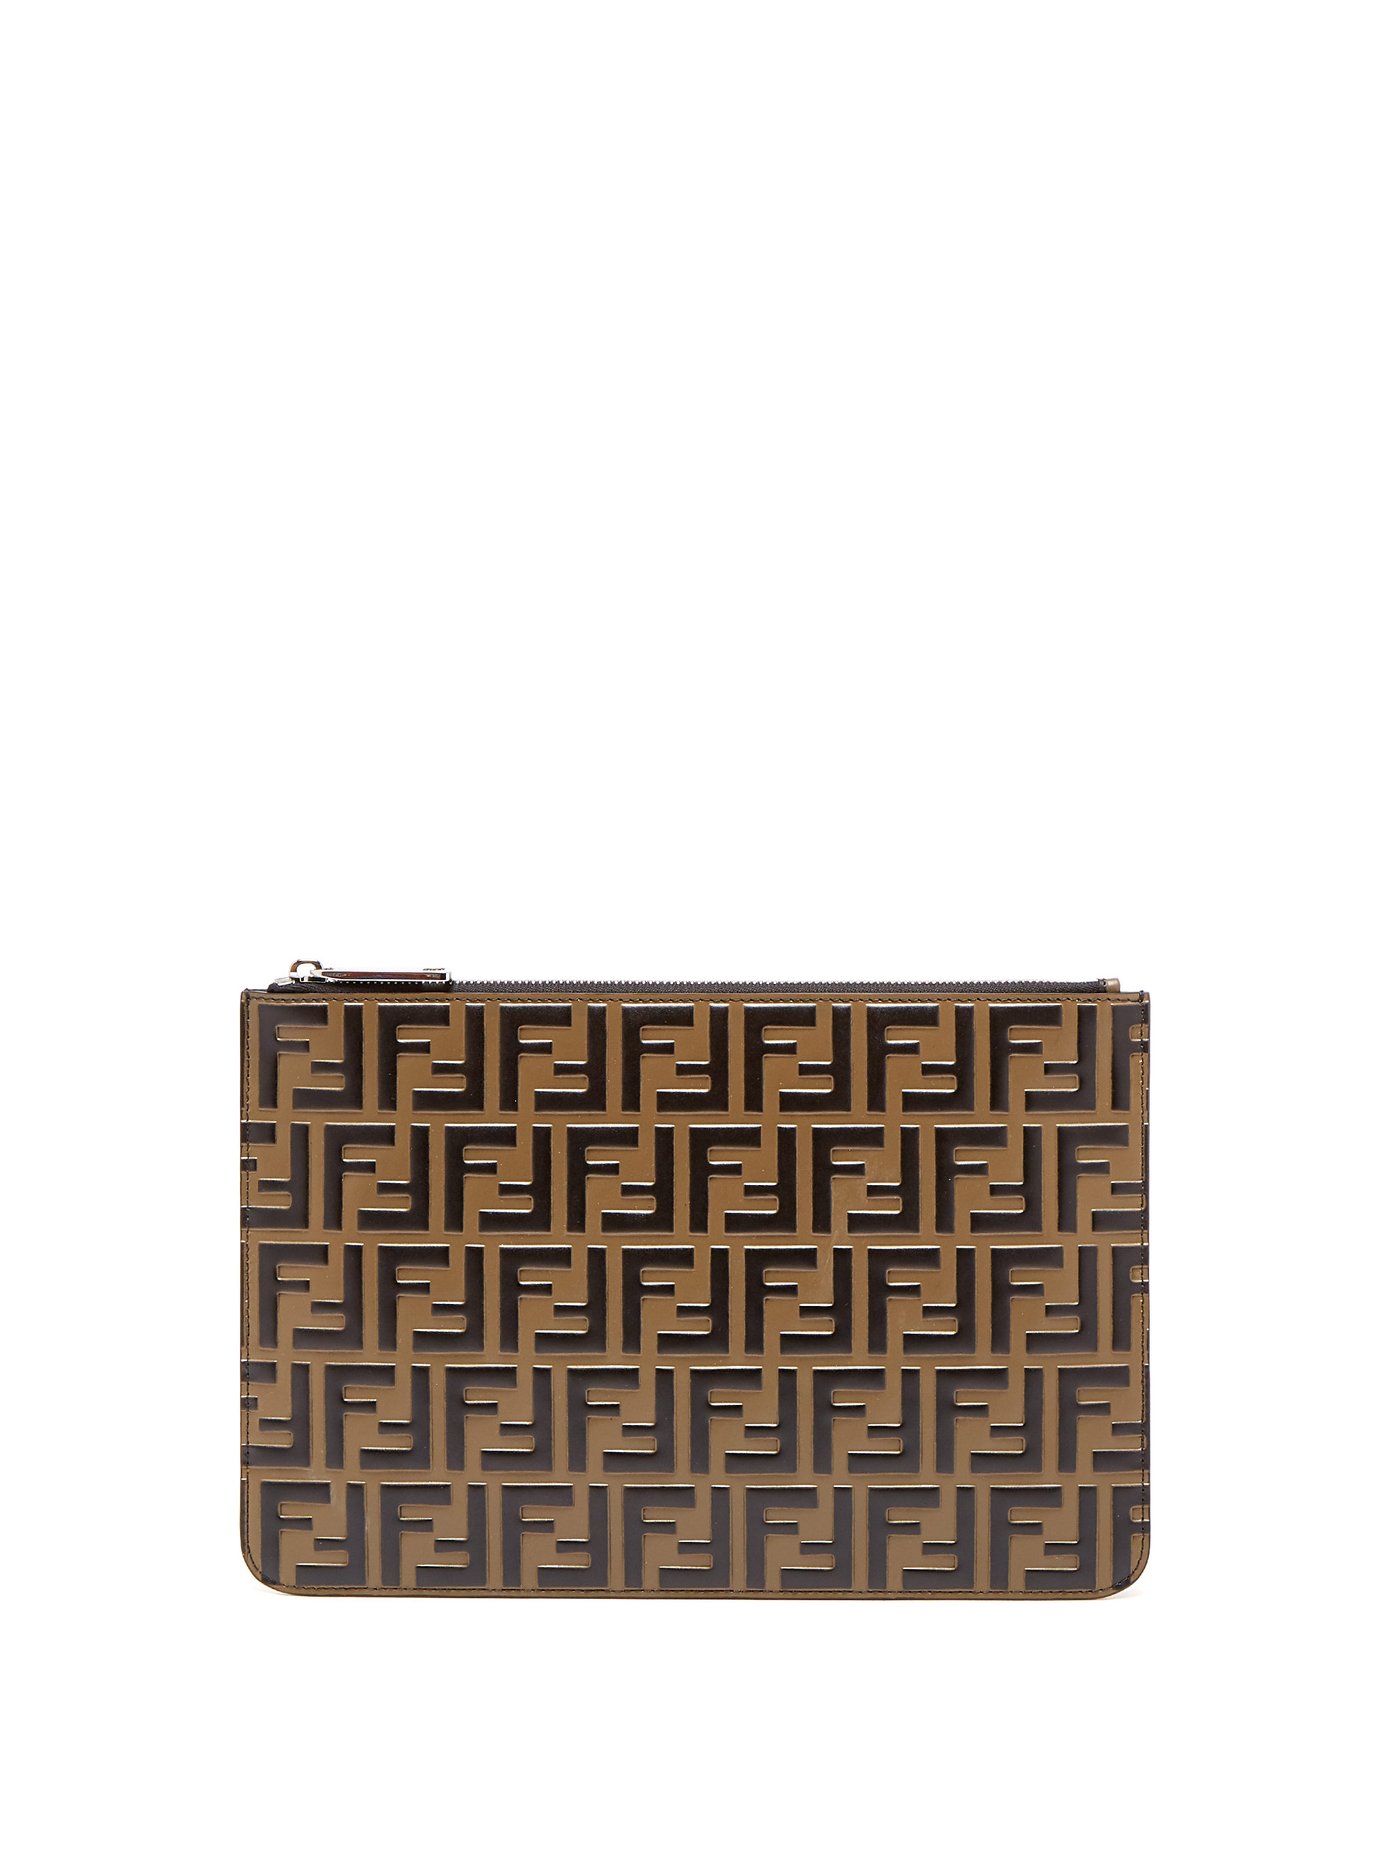 FF logo leather pouch | Fendi 